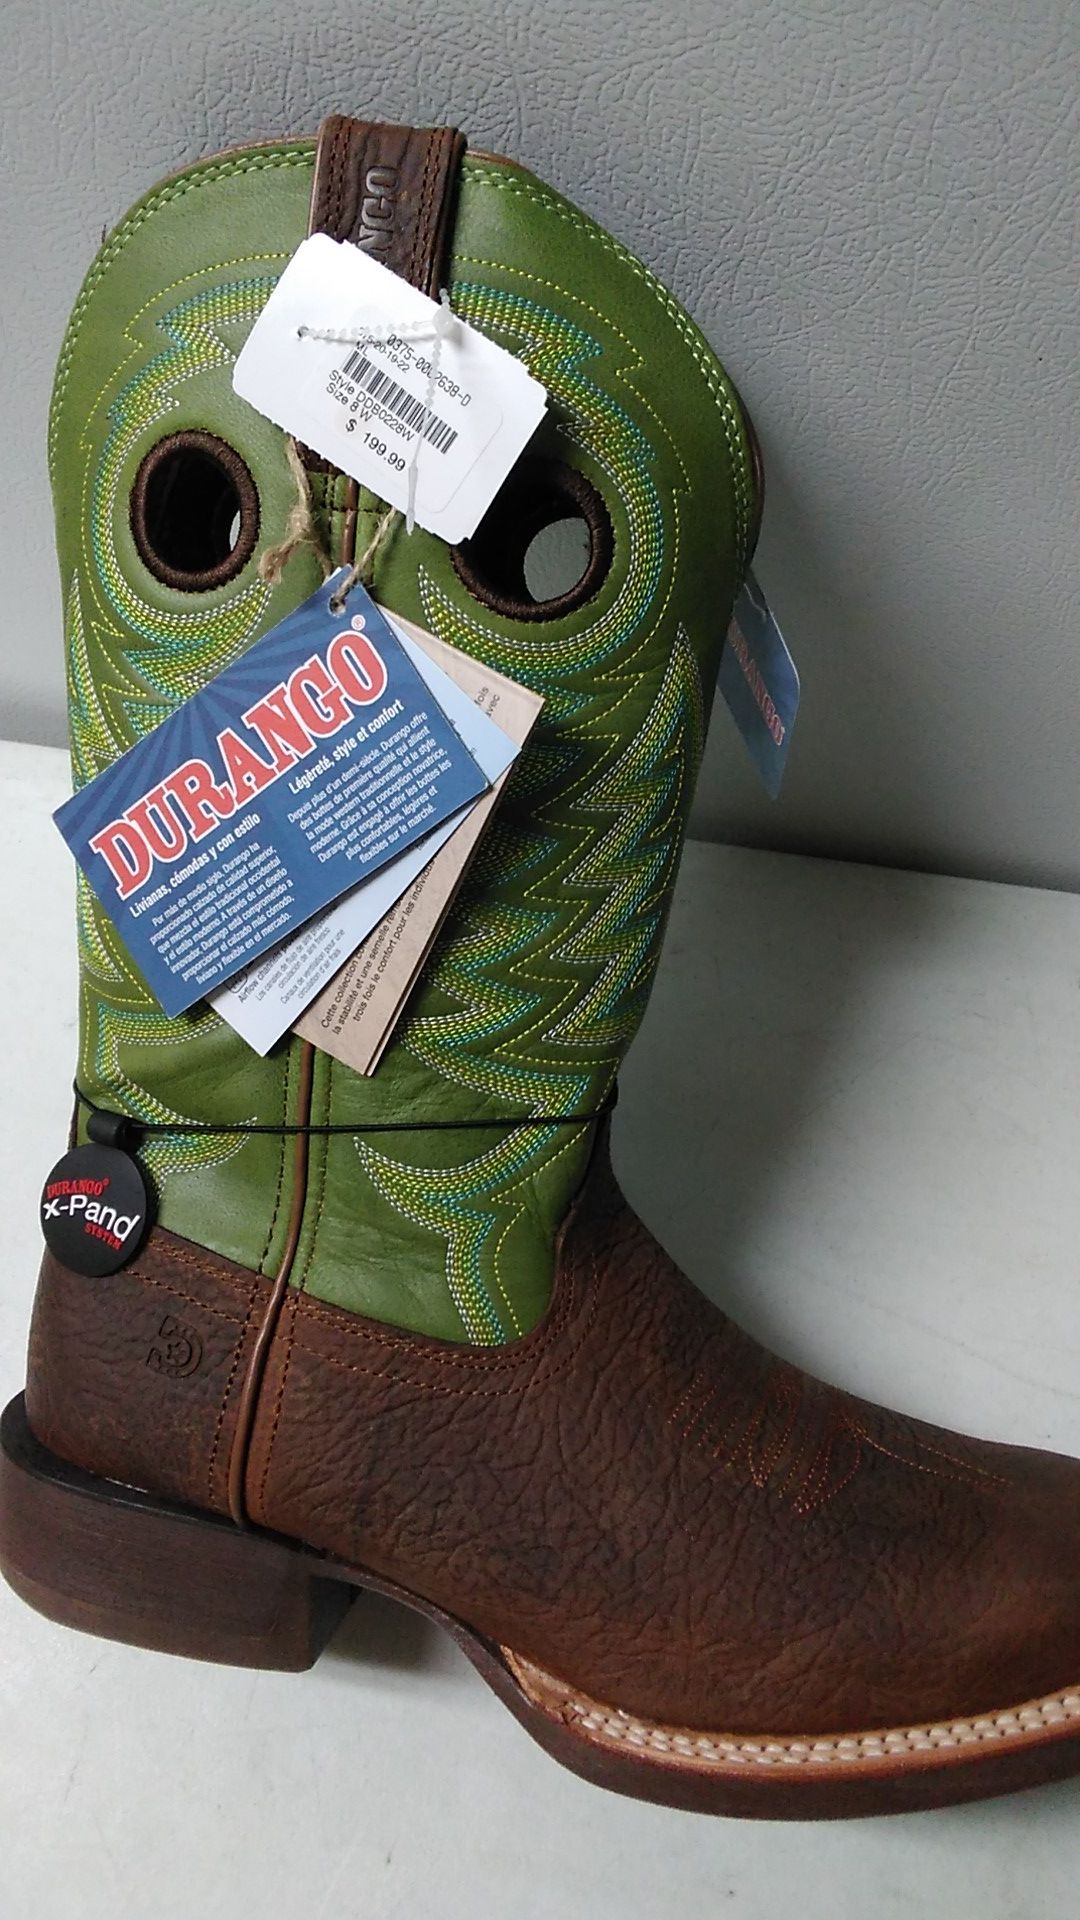 Cowboy Durango boots $120